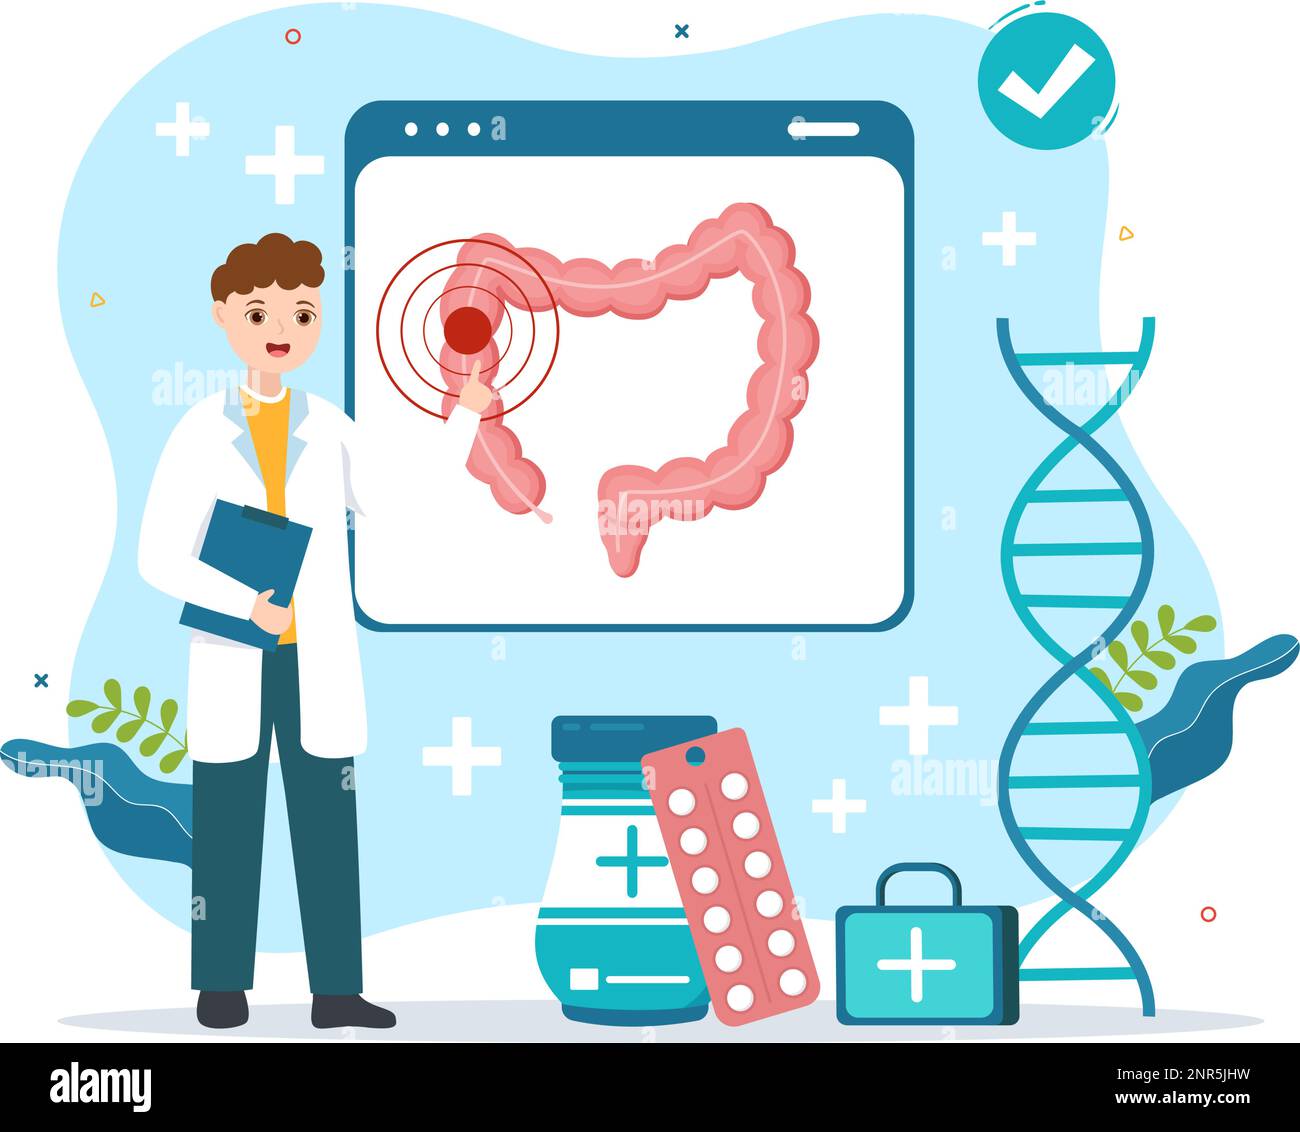 Proctologo o Colonoscopia Illustrazione con un medico esamina del Colon e batteri nocivi in Cartoon mano disegnato per Landing Page Templates Illustrazione Vettoriale